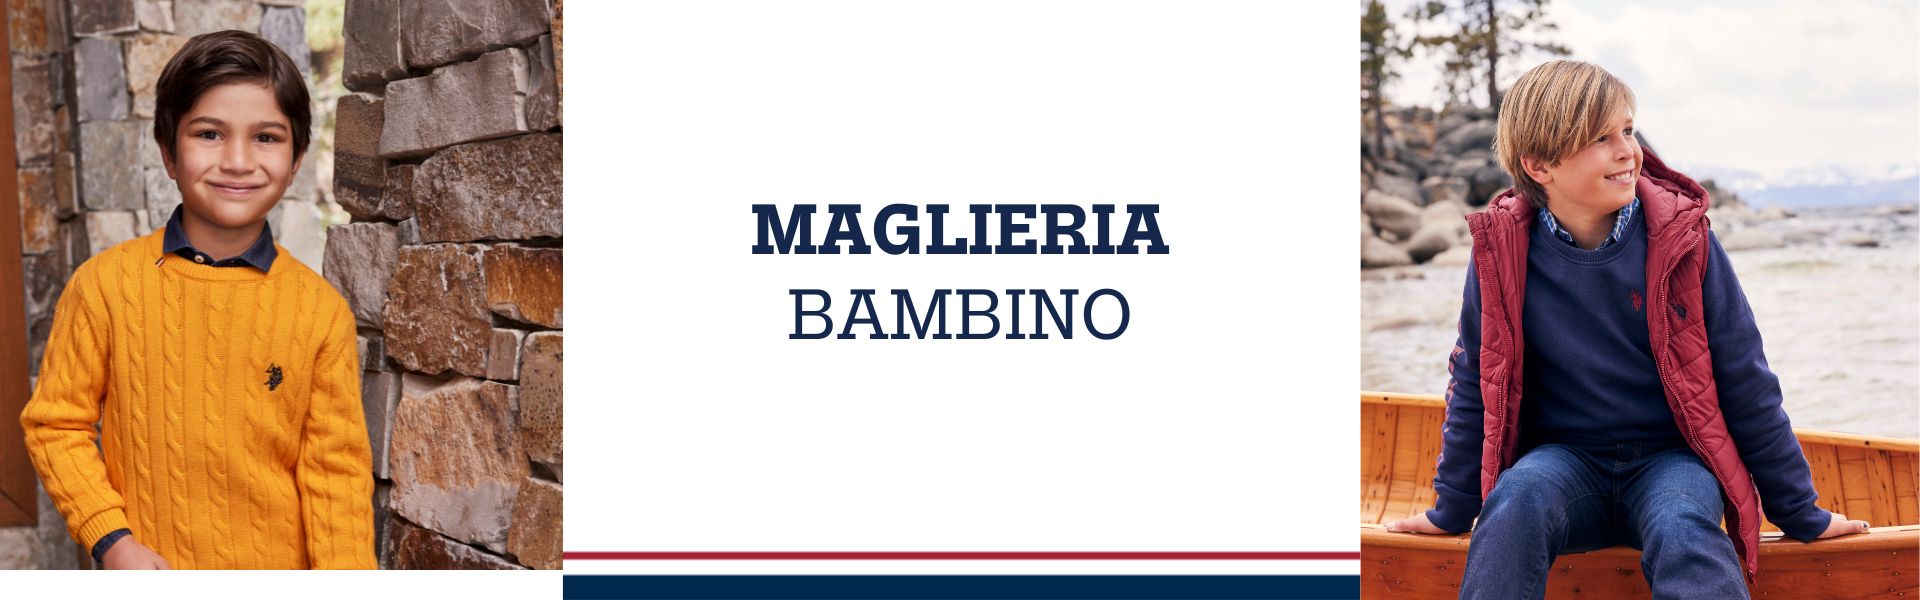 MAGLIERIA BAMBINO